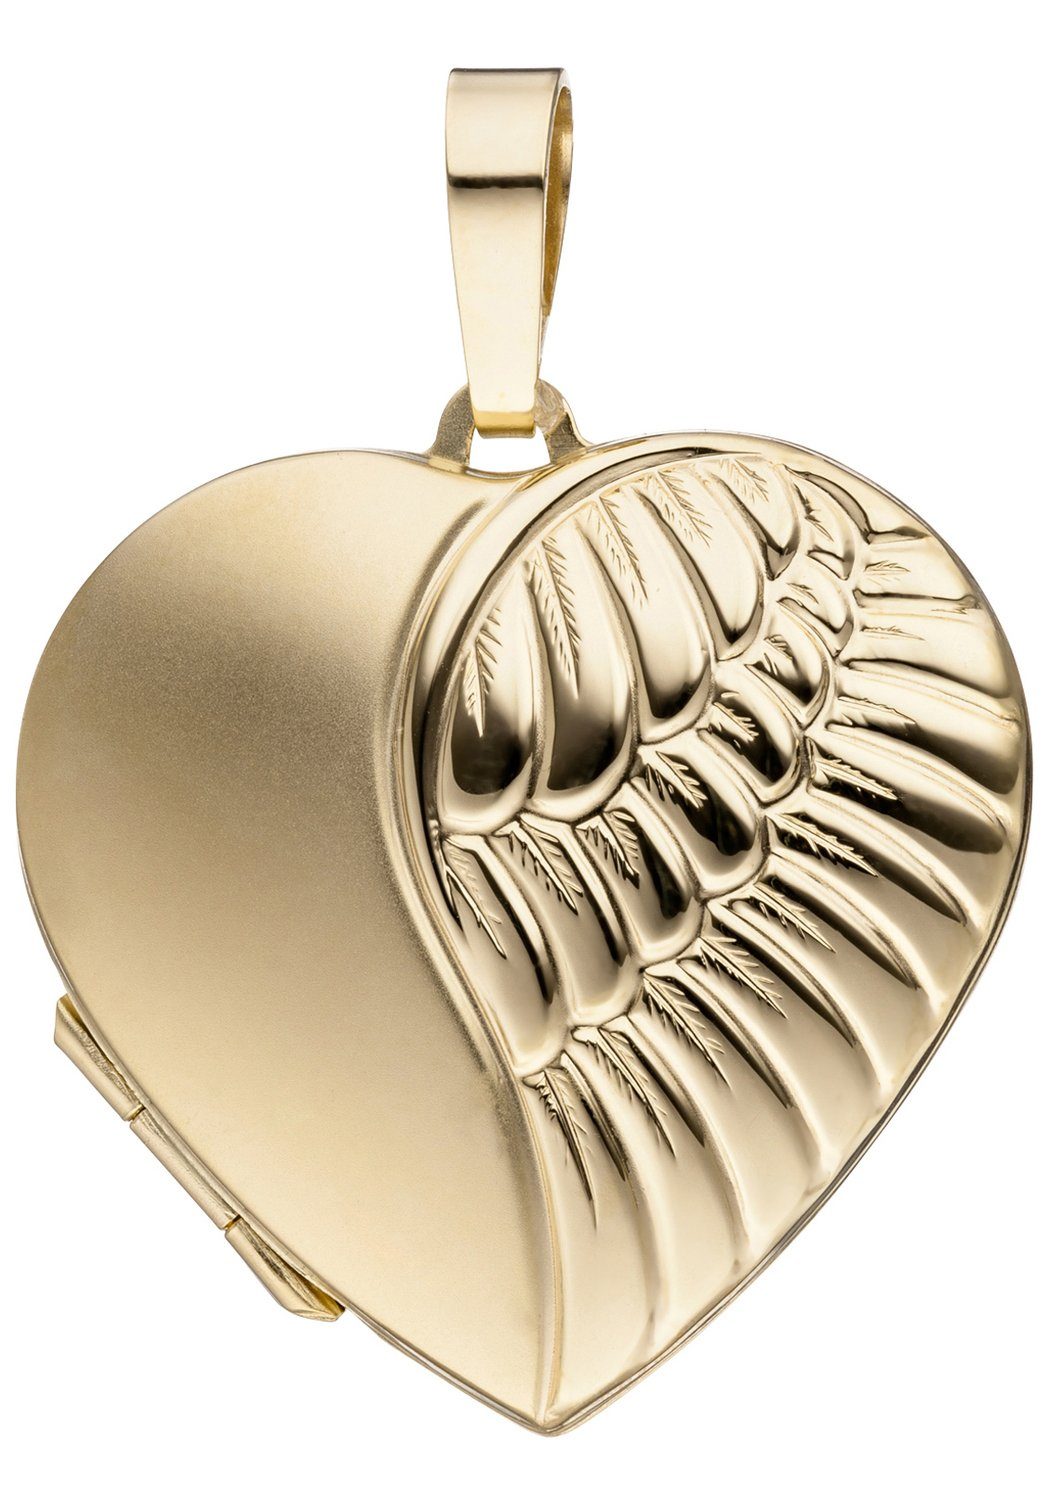 JOBO Medallionanhänger Anhänger Medaillon Herz, 333 Gold, Höhe ca. 30,2 mm,  Breite ca. 28,7 mm, Tiefe ca. 6,7 mm